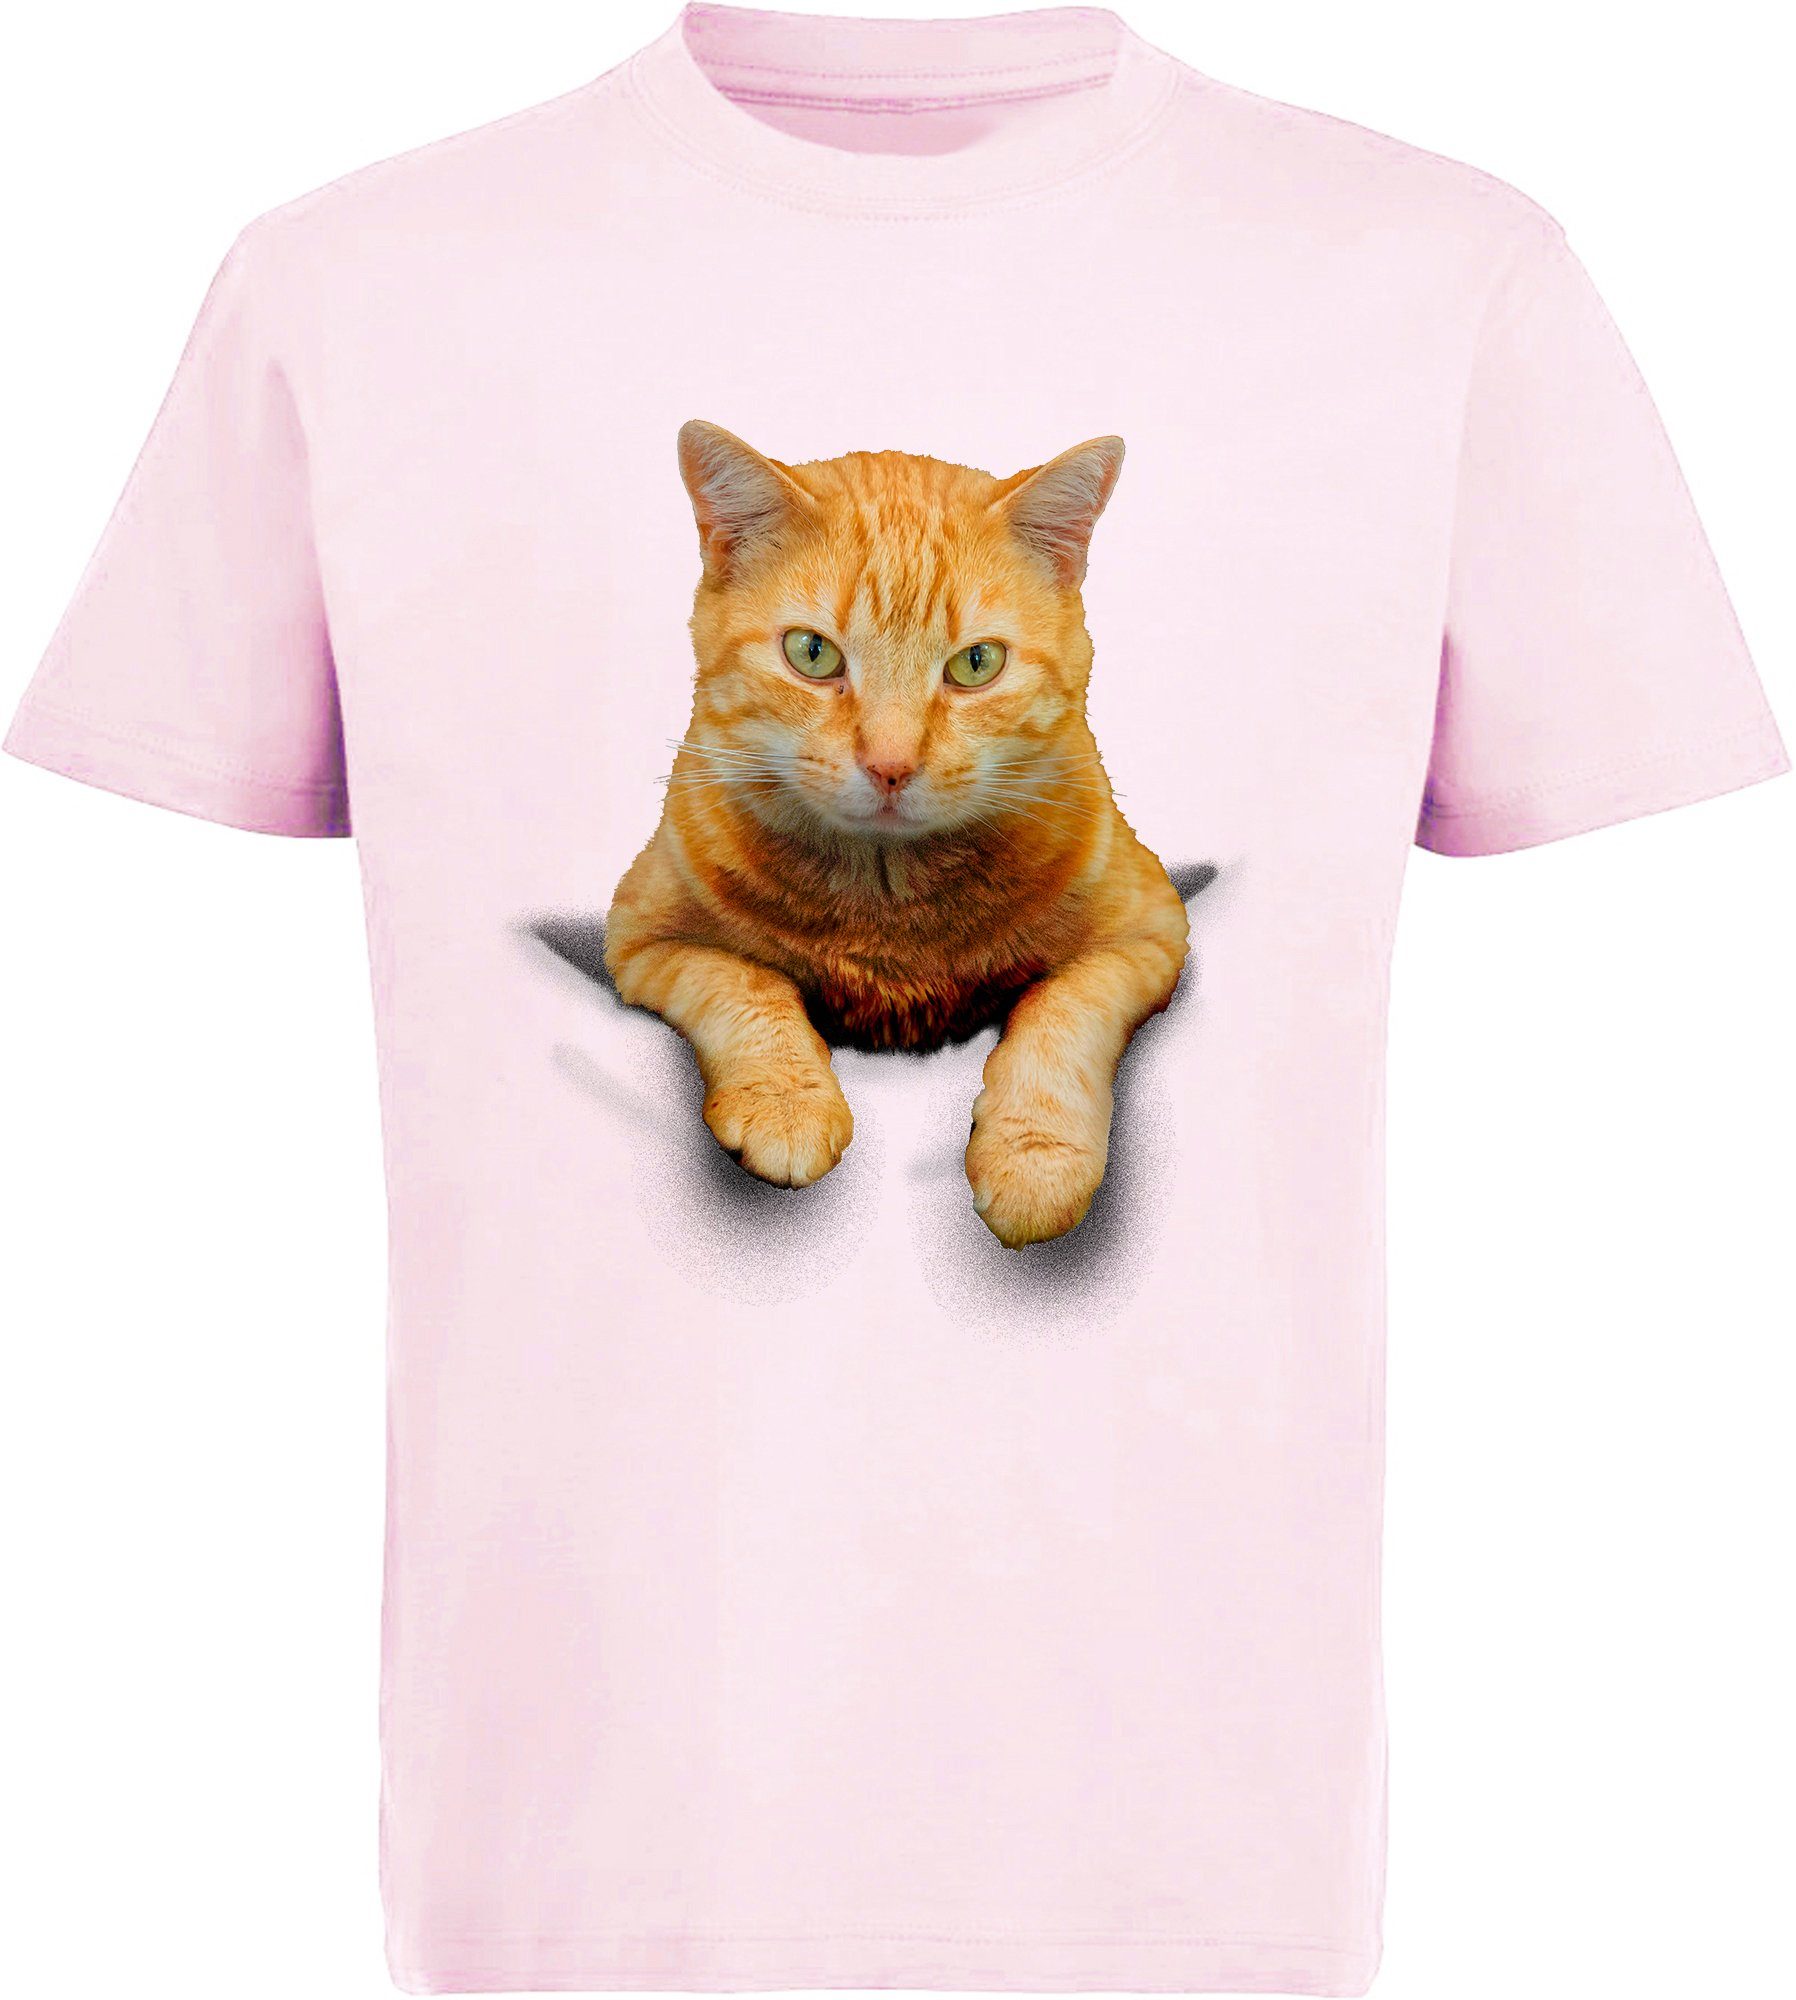 MyDesign24 Print-Shirt bedrucktes Mädchen T-Shirt Katze in der Tasche Baumwollshirt mit Katze, weiß, schwarz, rot, rosa, i109